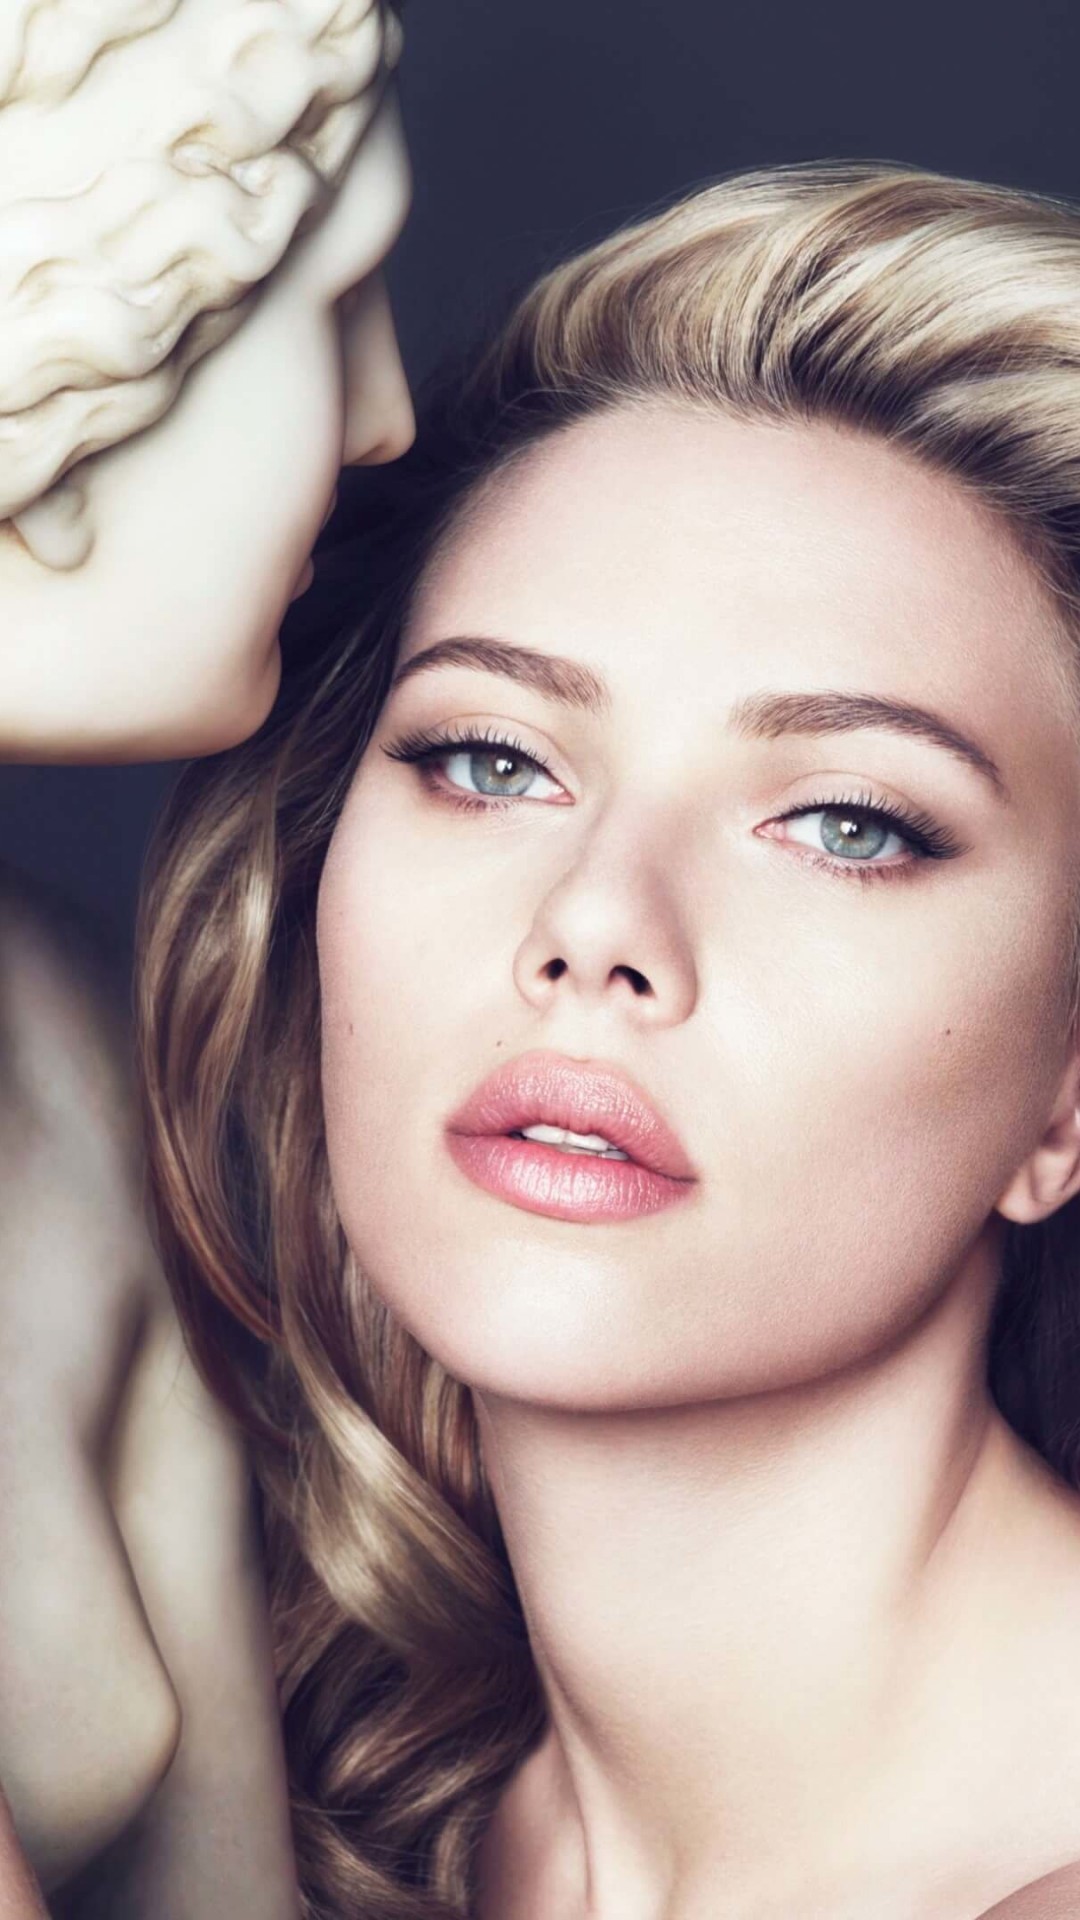 Scarlett Johansson in Dolce & Gabbana Advert Wallpaper for LG G2